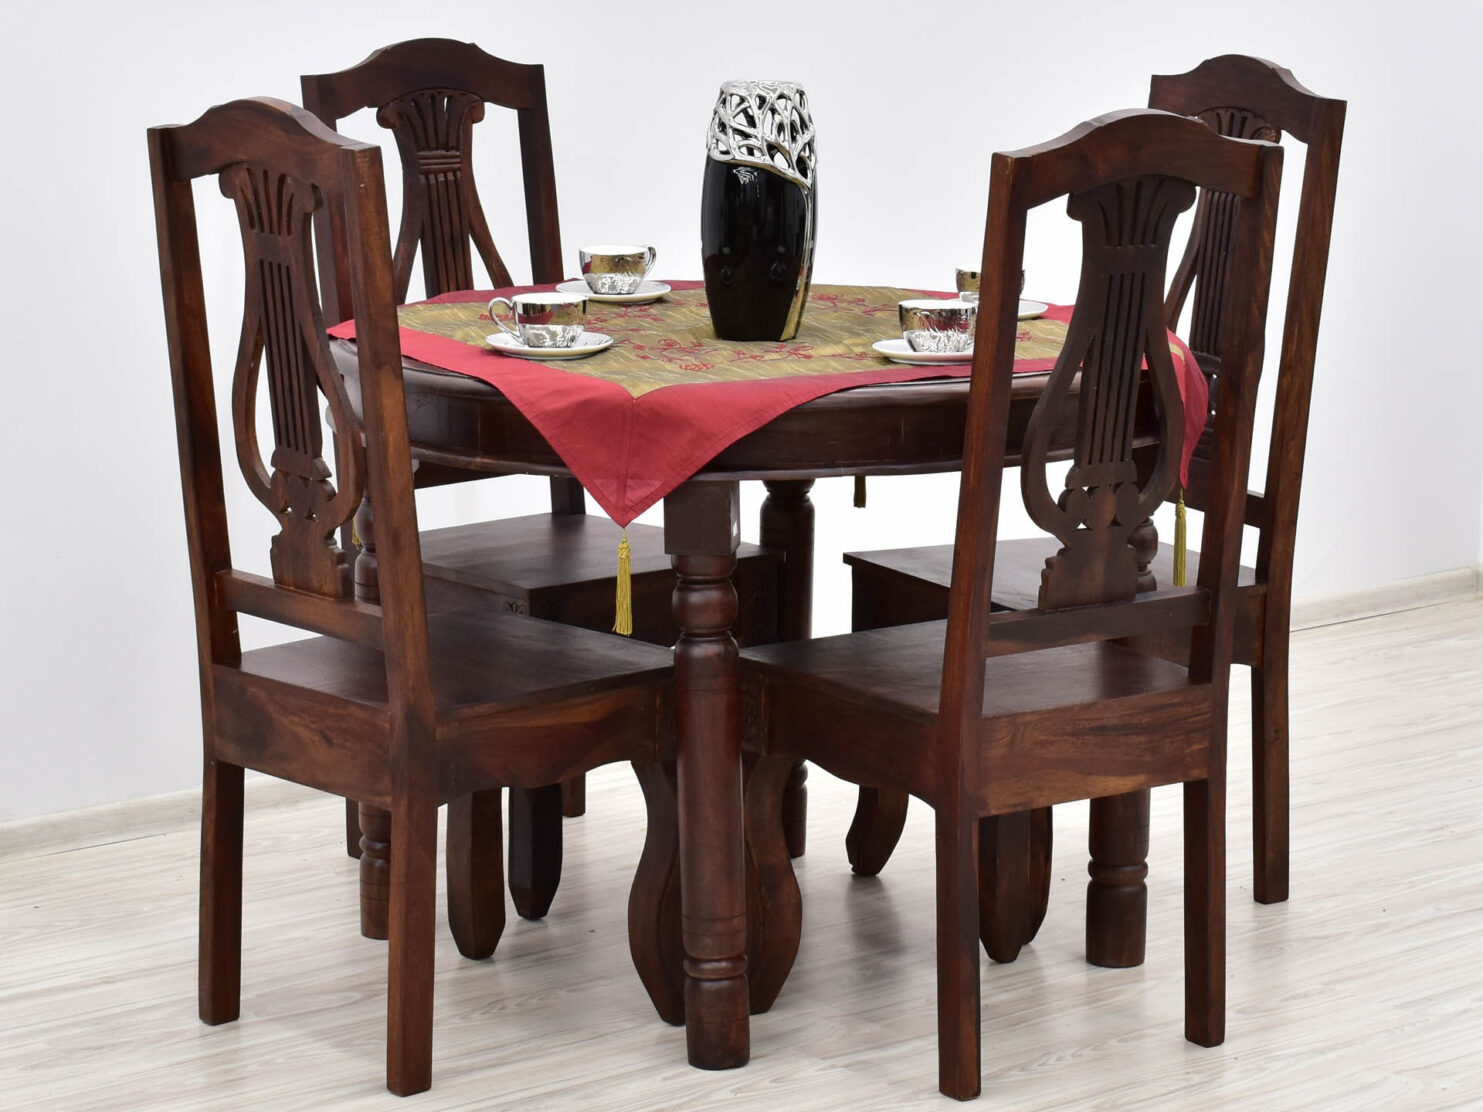 komplet-obiadowy-kolonialny-okragly-stol-4-rzezbione-krzesla-lite-drewno-palisander-indyjski